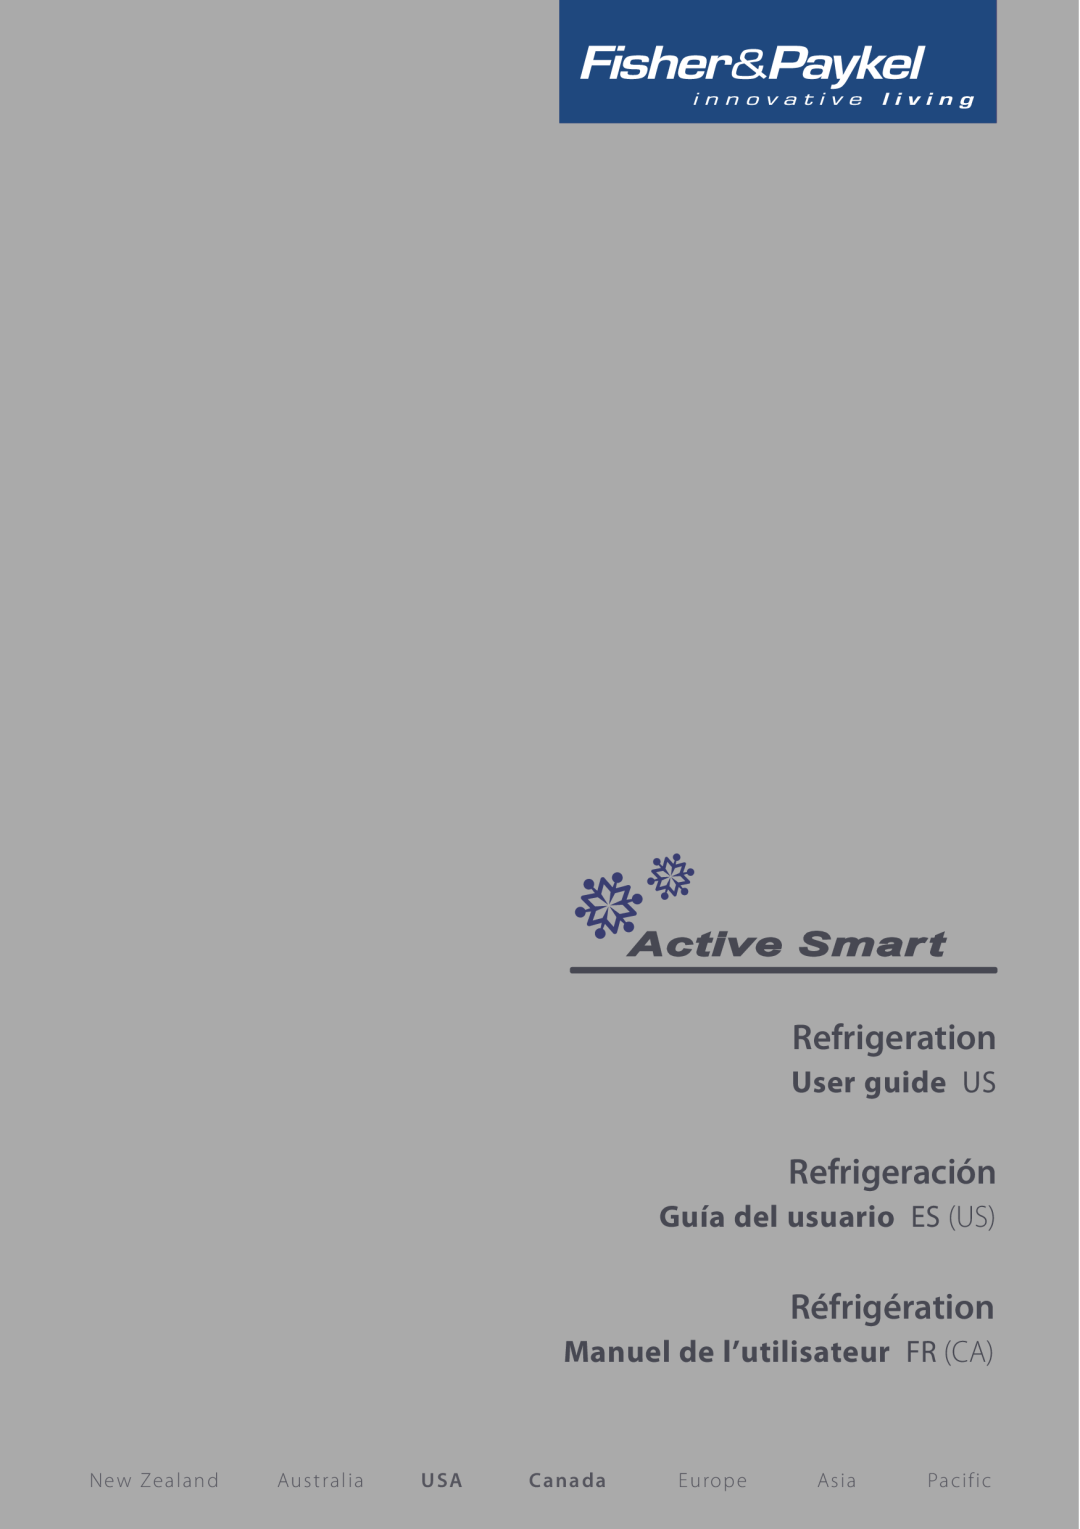 Fisher & Paykel Active Smart manual Refrigeration, Refrigeración, Réfrigération, User guide US, Guía del usuario ES US 